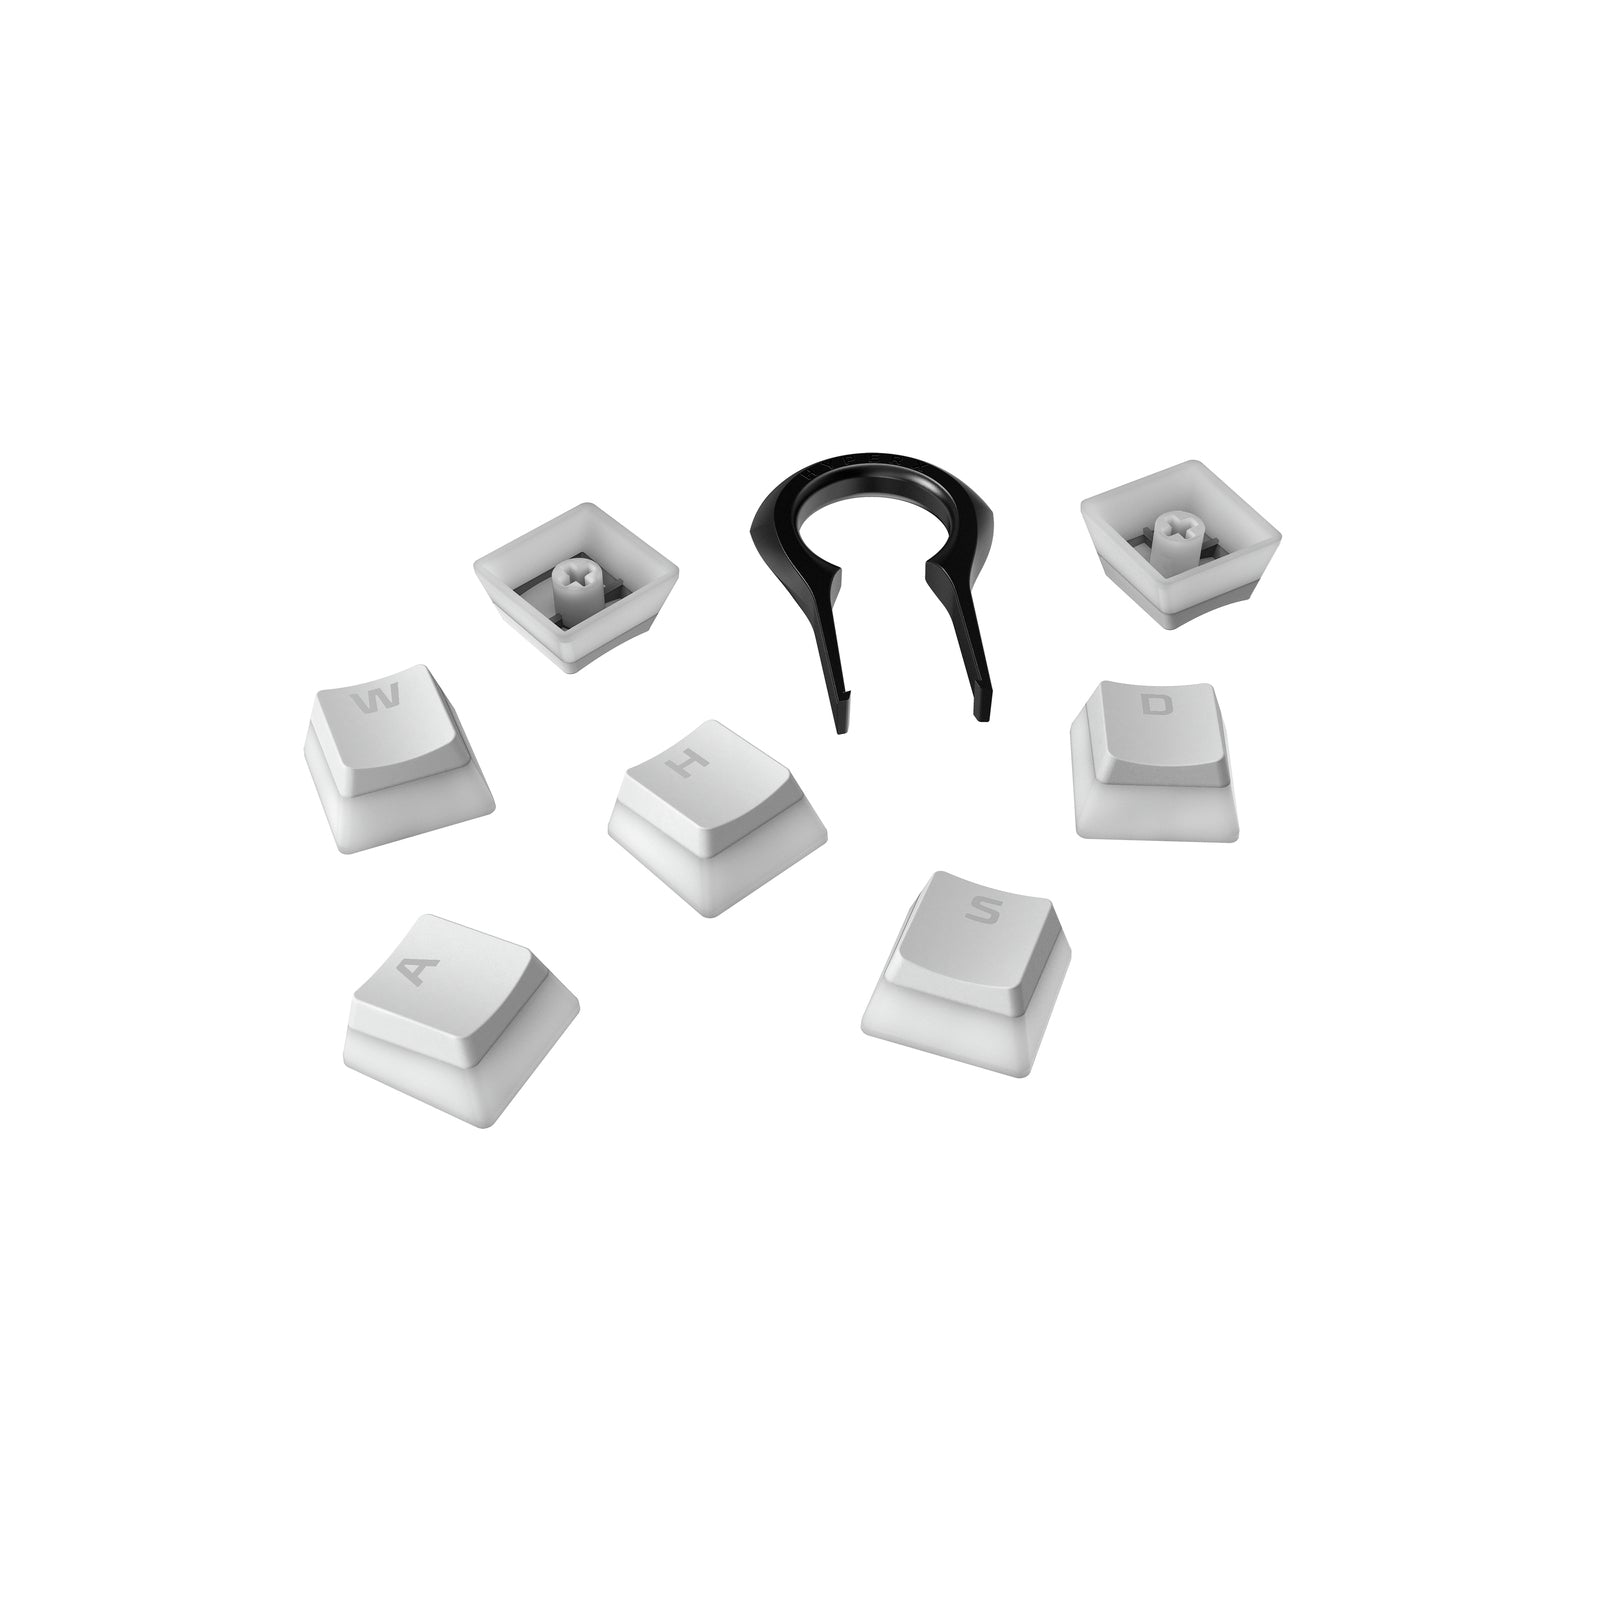 HyperX Pudding Keycaps en Español y Almohadilla CoolerMaster WR530